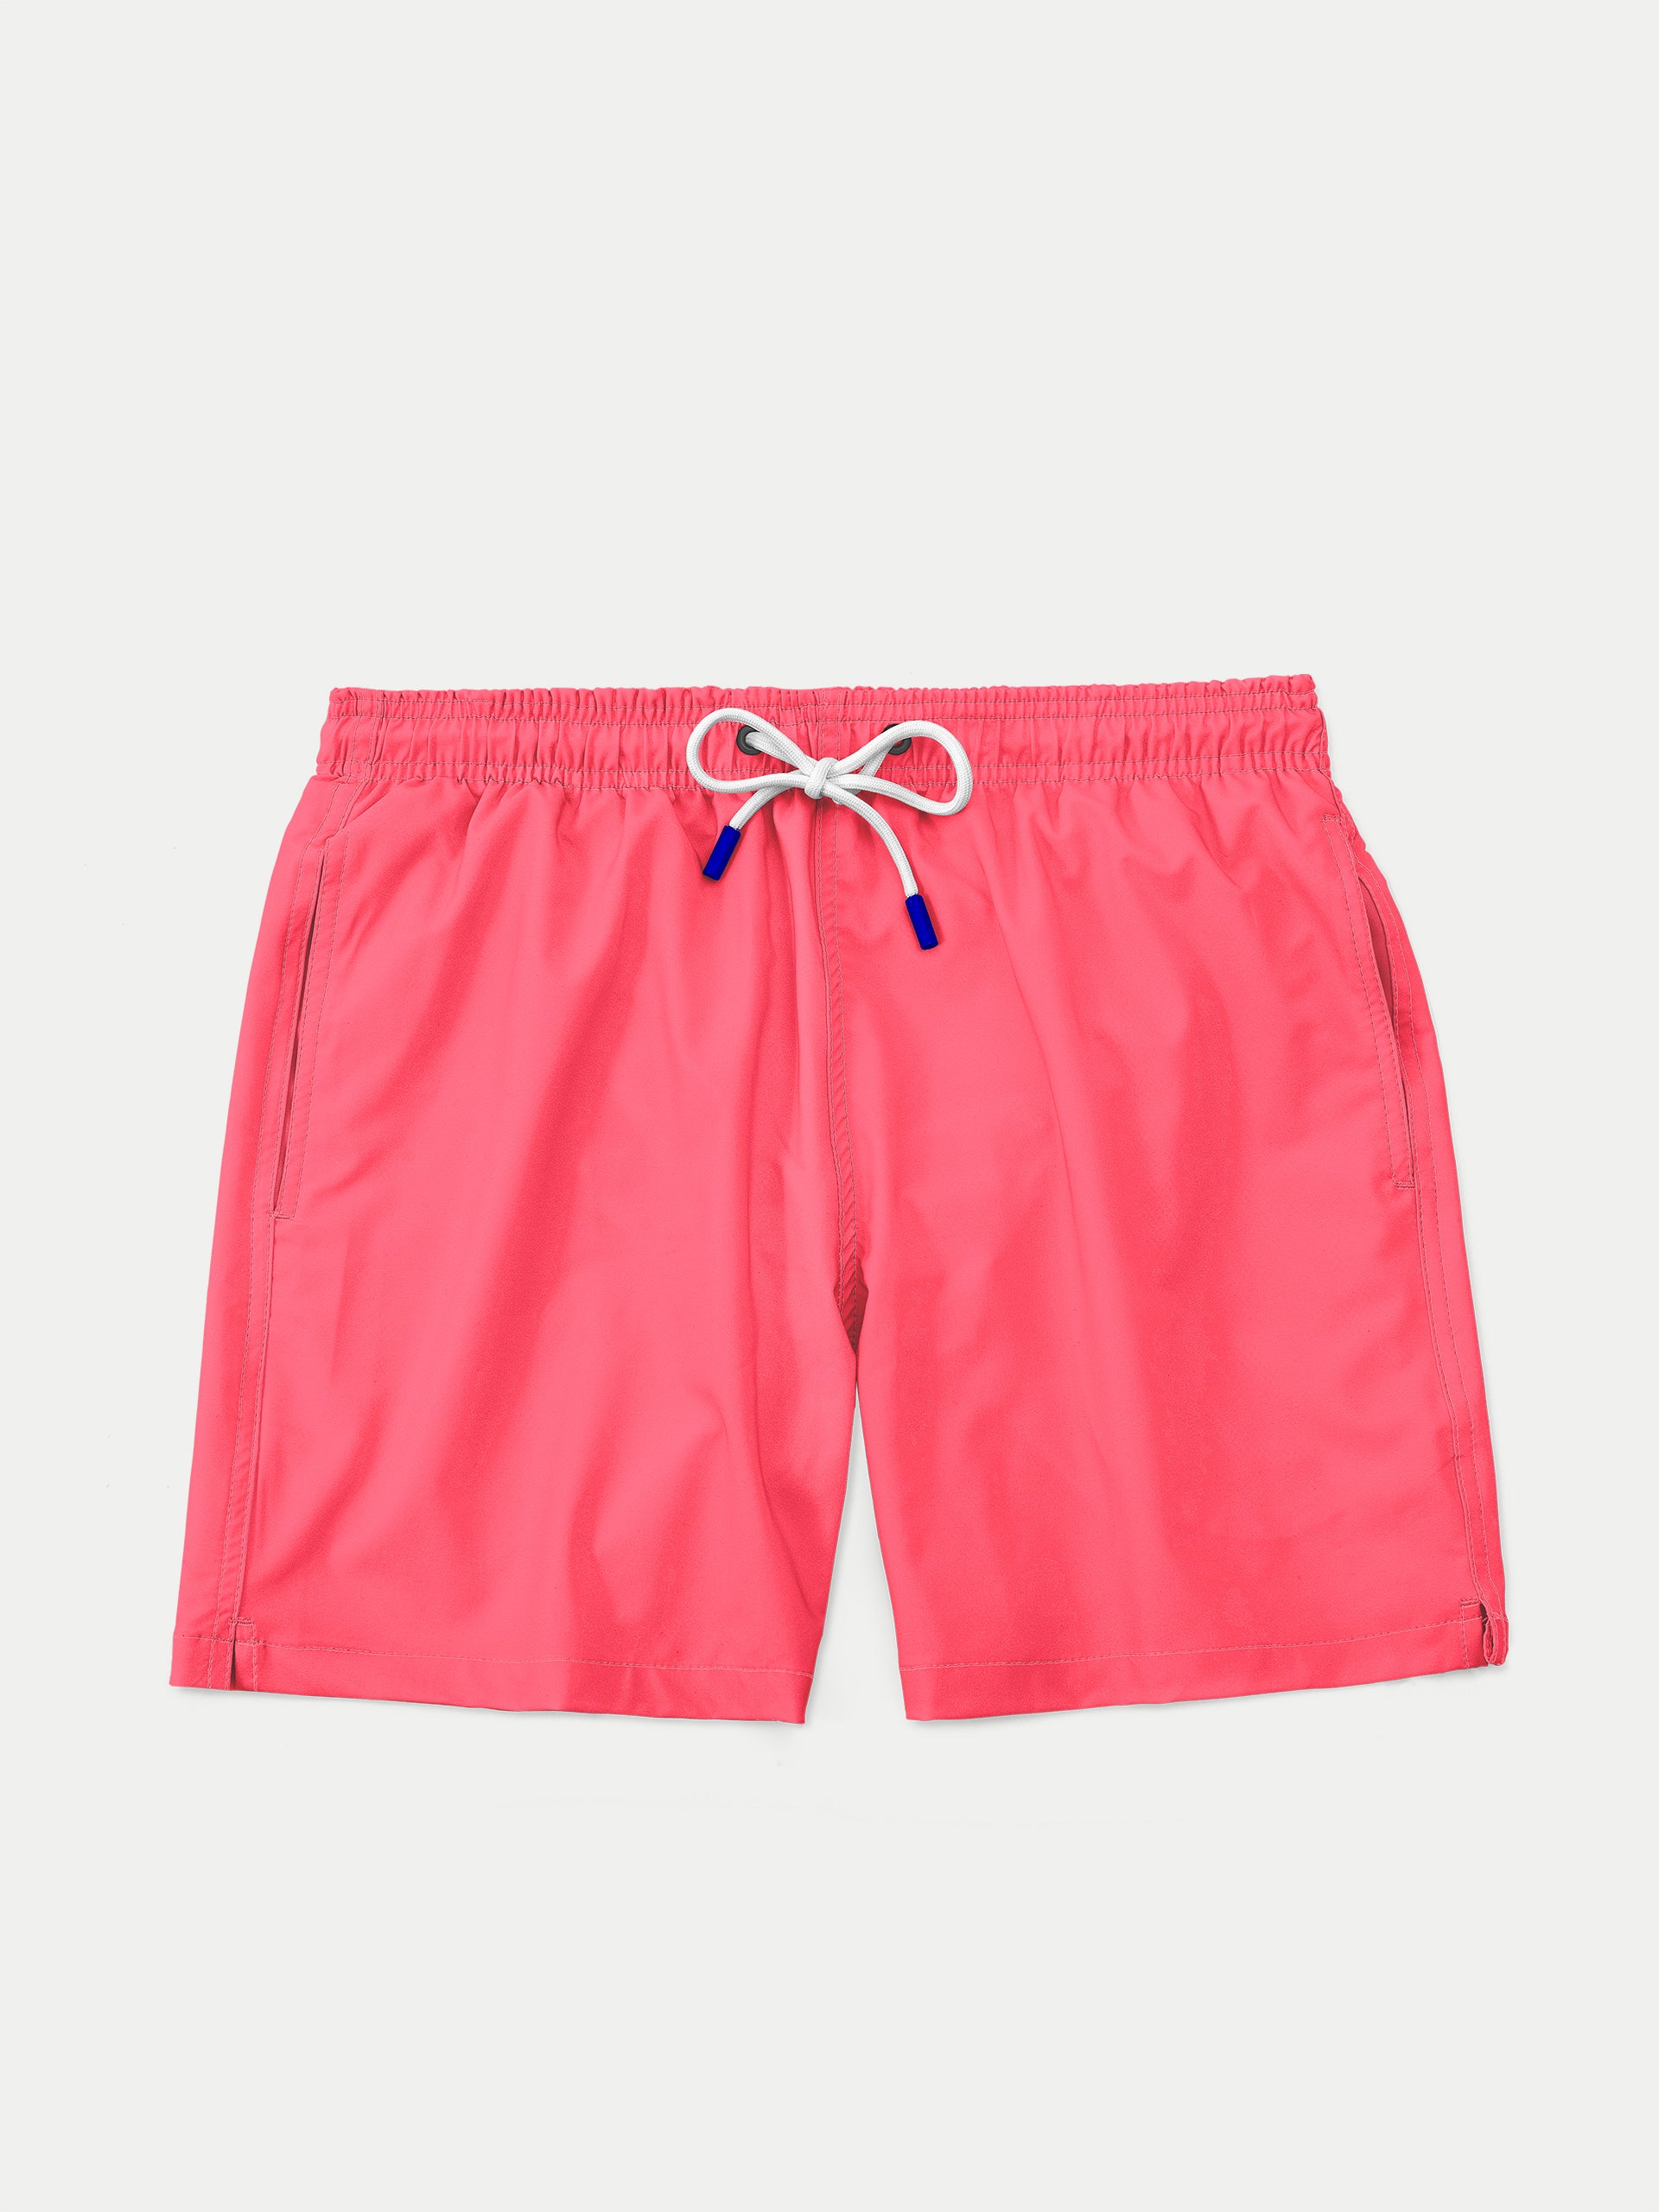 ‘Basic Neon Pink’ Swim Trunks for Men by 98 Coast Av.